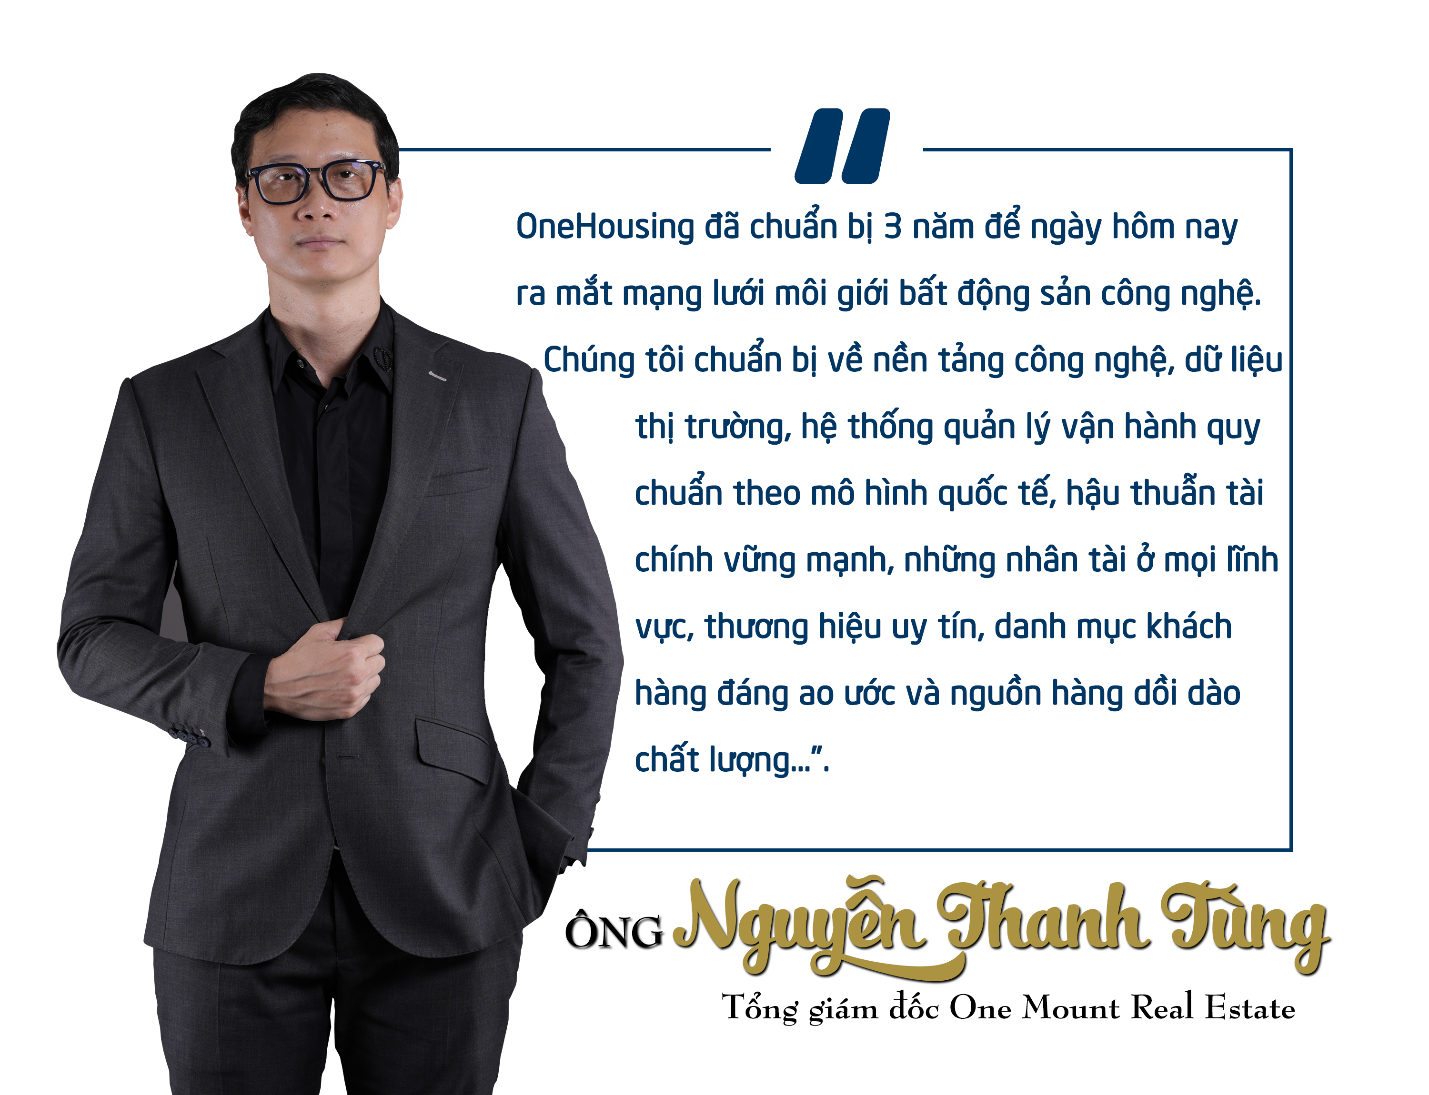 Ông Nguyễn Thanh Tùng, Tổng giám đốc One Mount Real Estate phát biểu tại sự kiện.